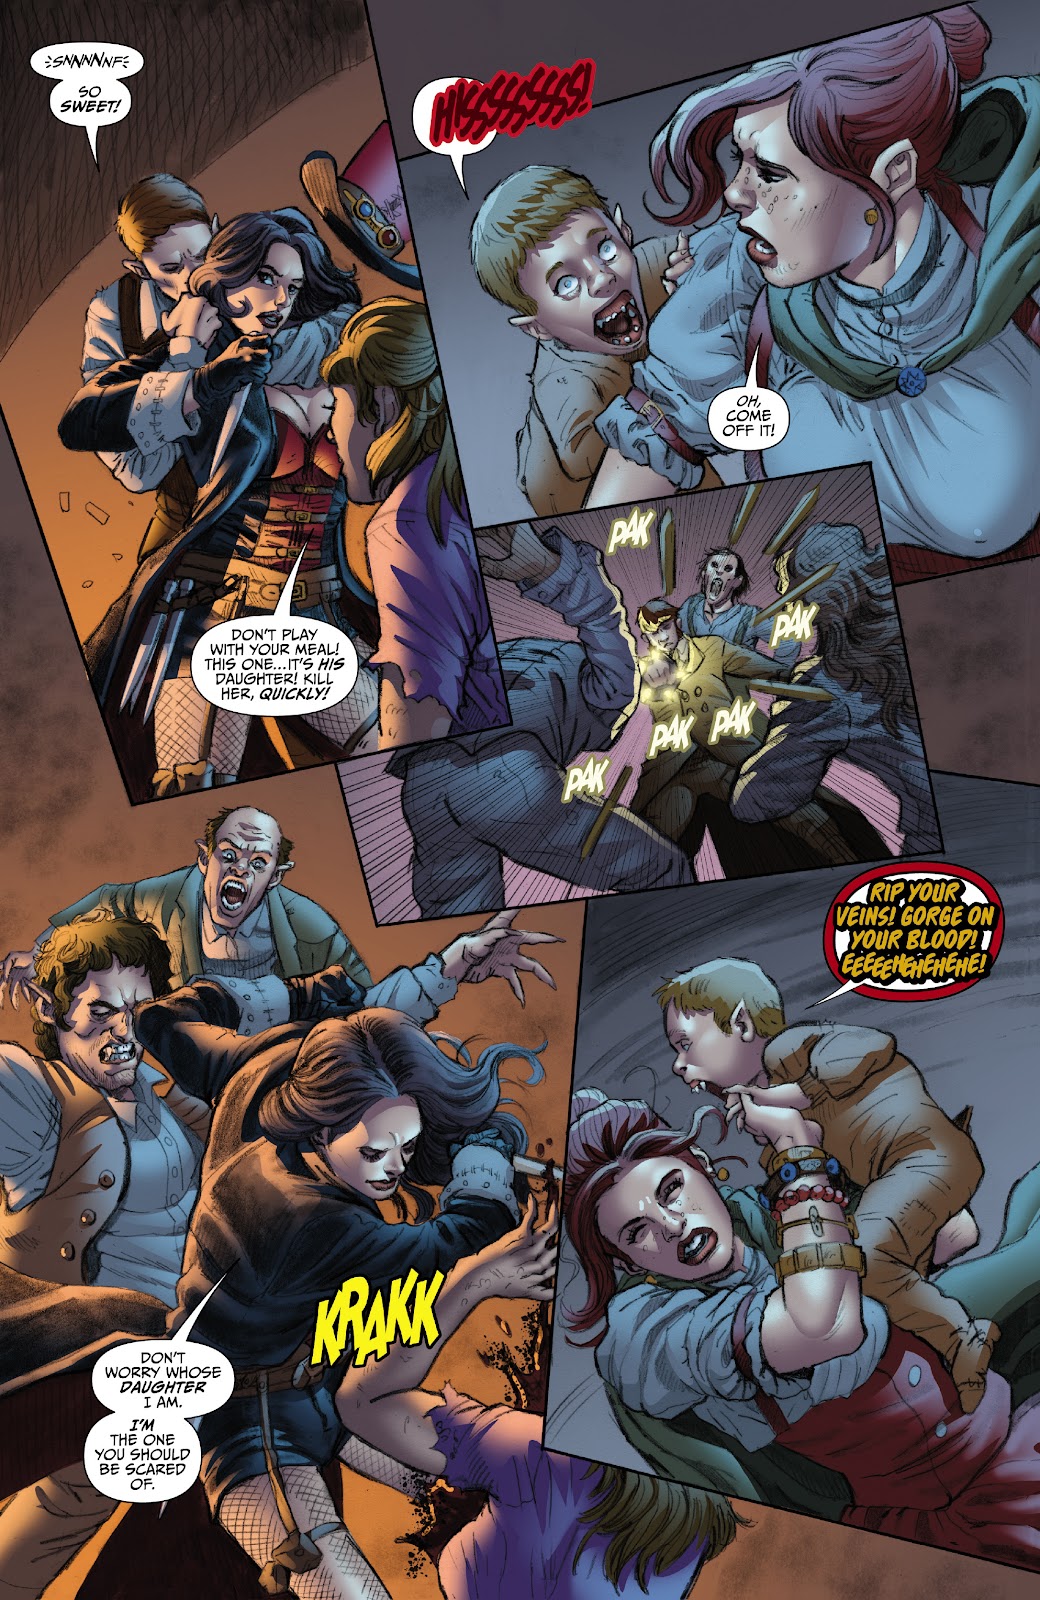 Van Helsing: Vampire Hunter issue 1 - Page 17